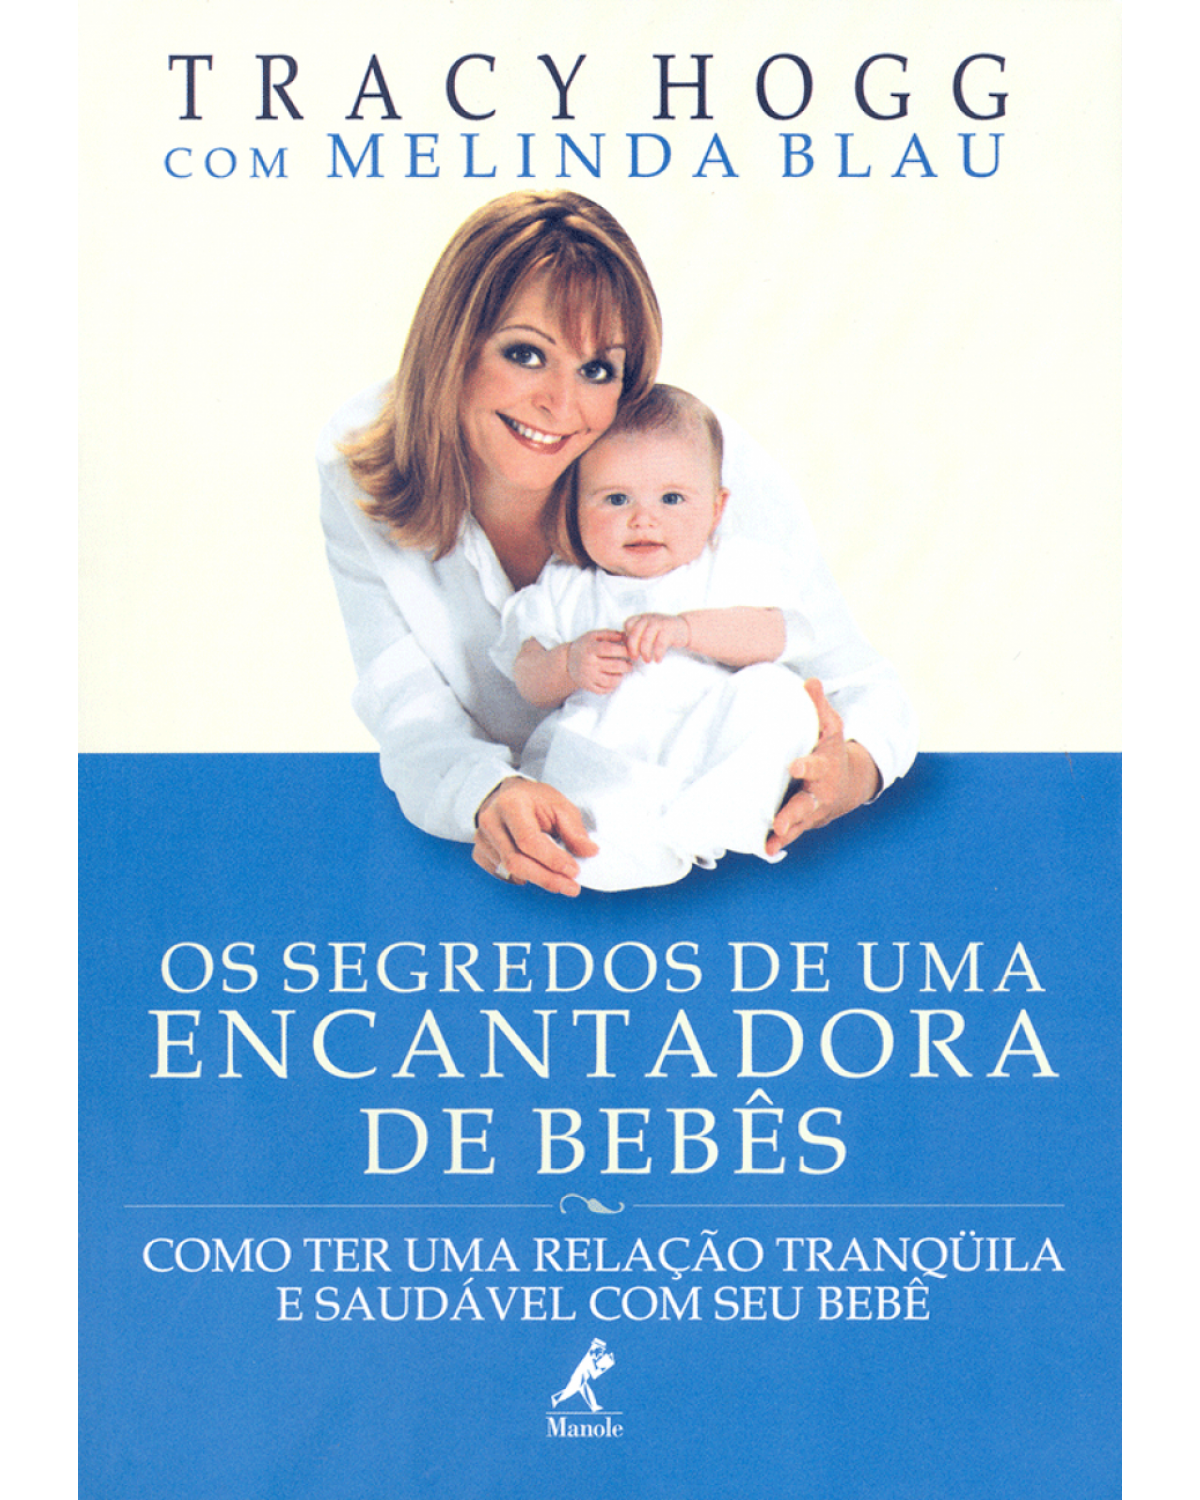 Os segredos de uma encantadora de bebês - Como ter uma relação tranqüila e saudável com seu bebê - 1ª Edição | 2002